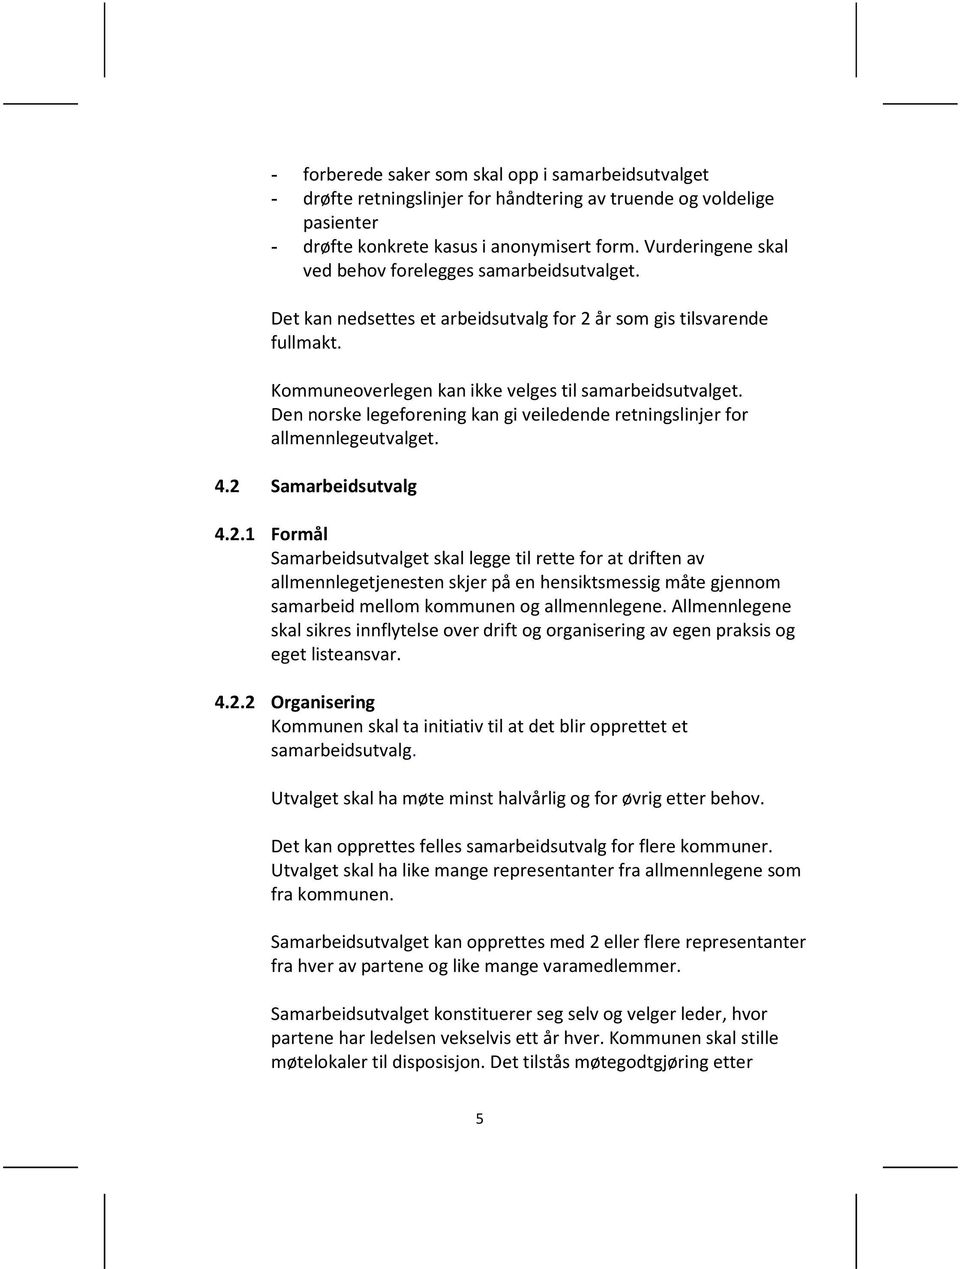 Den norske legeforening kan gi veiledende retningslinjer for allmennlegeutvalget. 4.2 